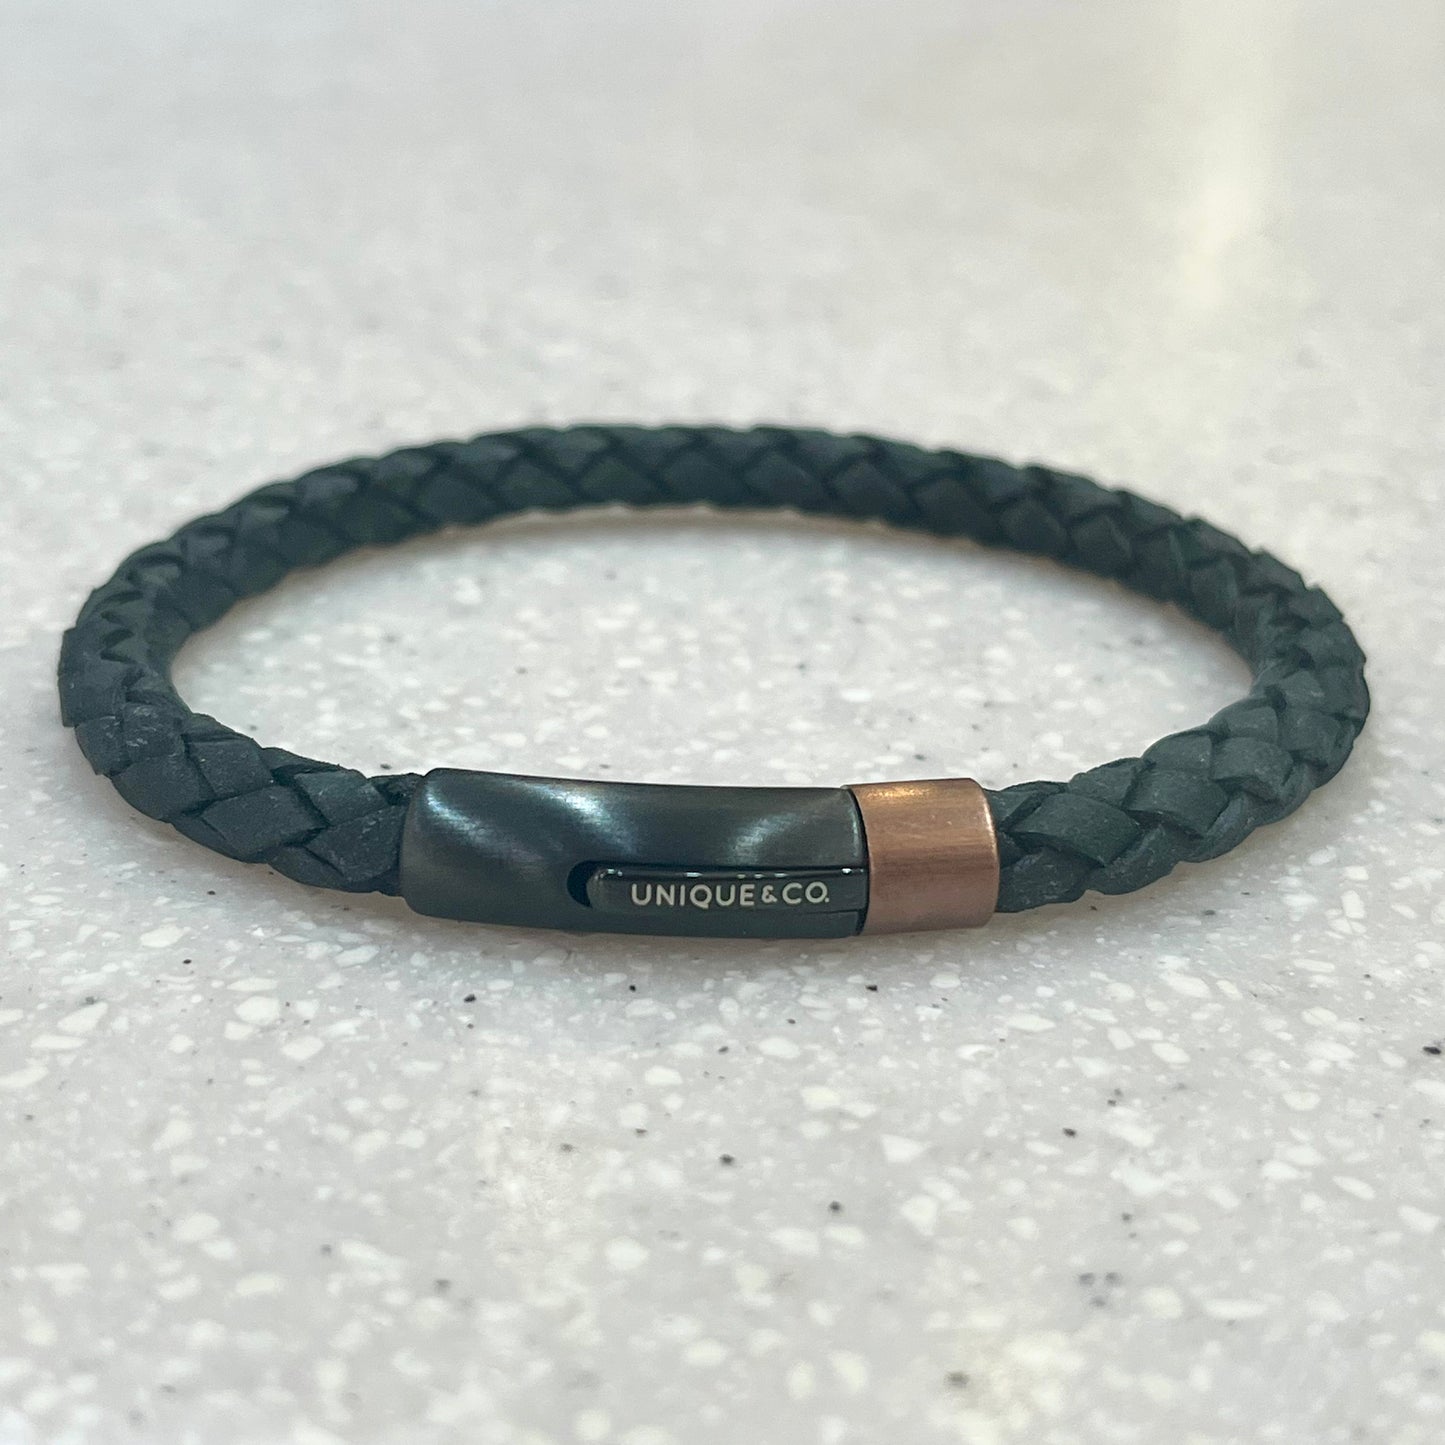 Unique Black Leather Bracelet with Brown Edge